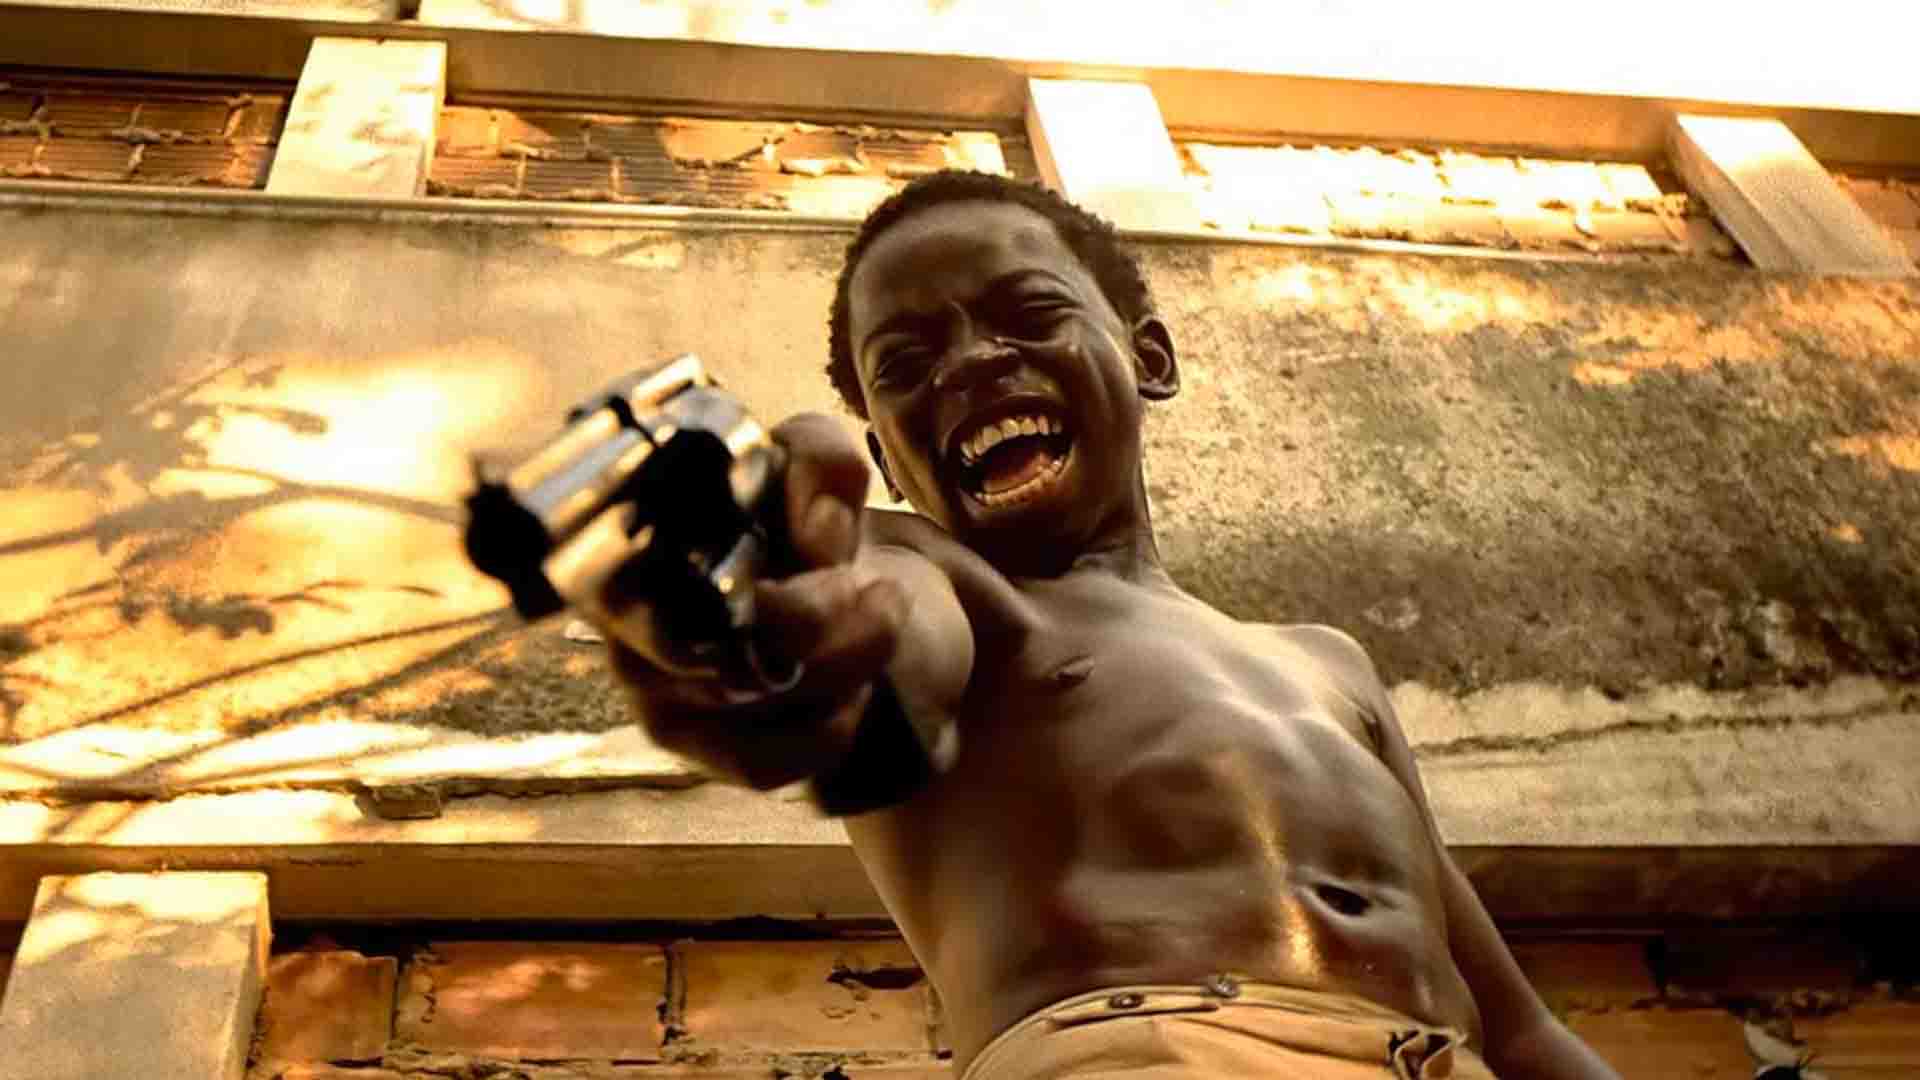 Cena do filme "Cidade de Deus", que mostra uma criança negra sem camisa segurando uma arma enquanto grita